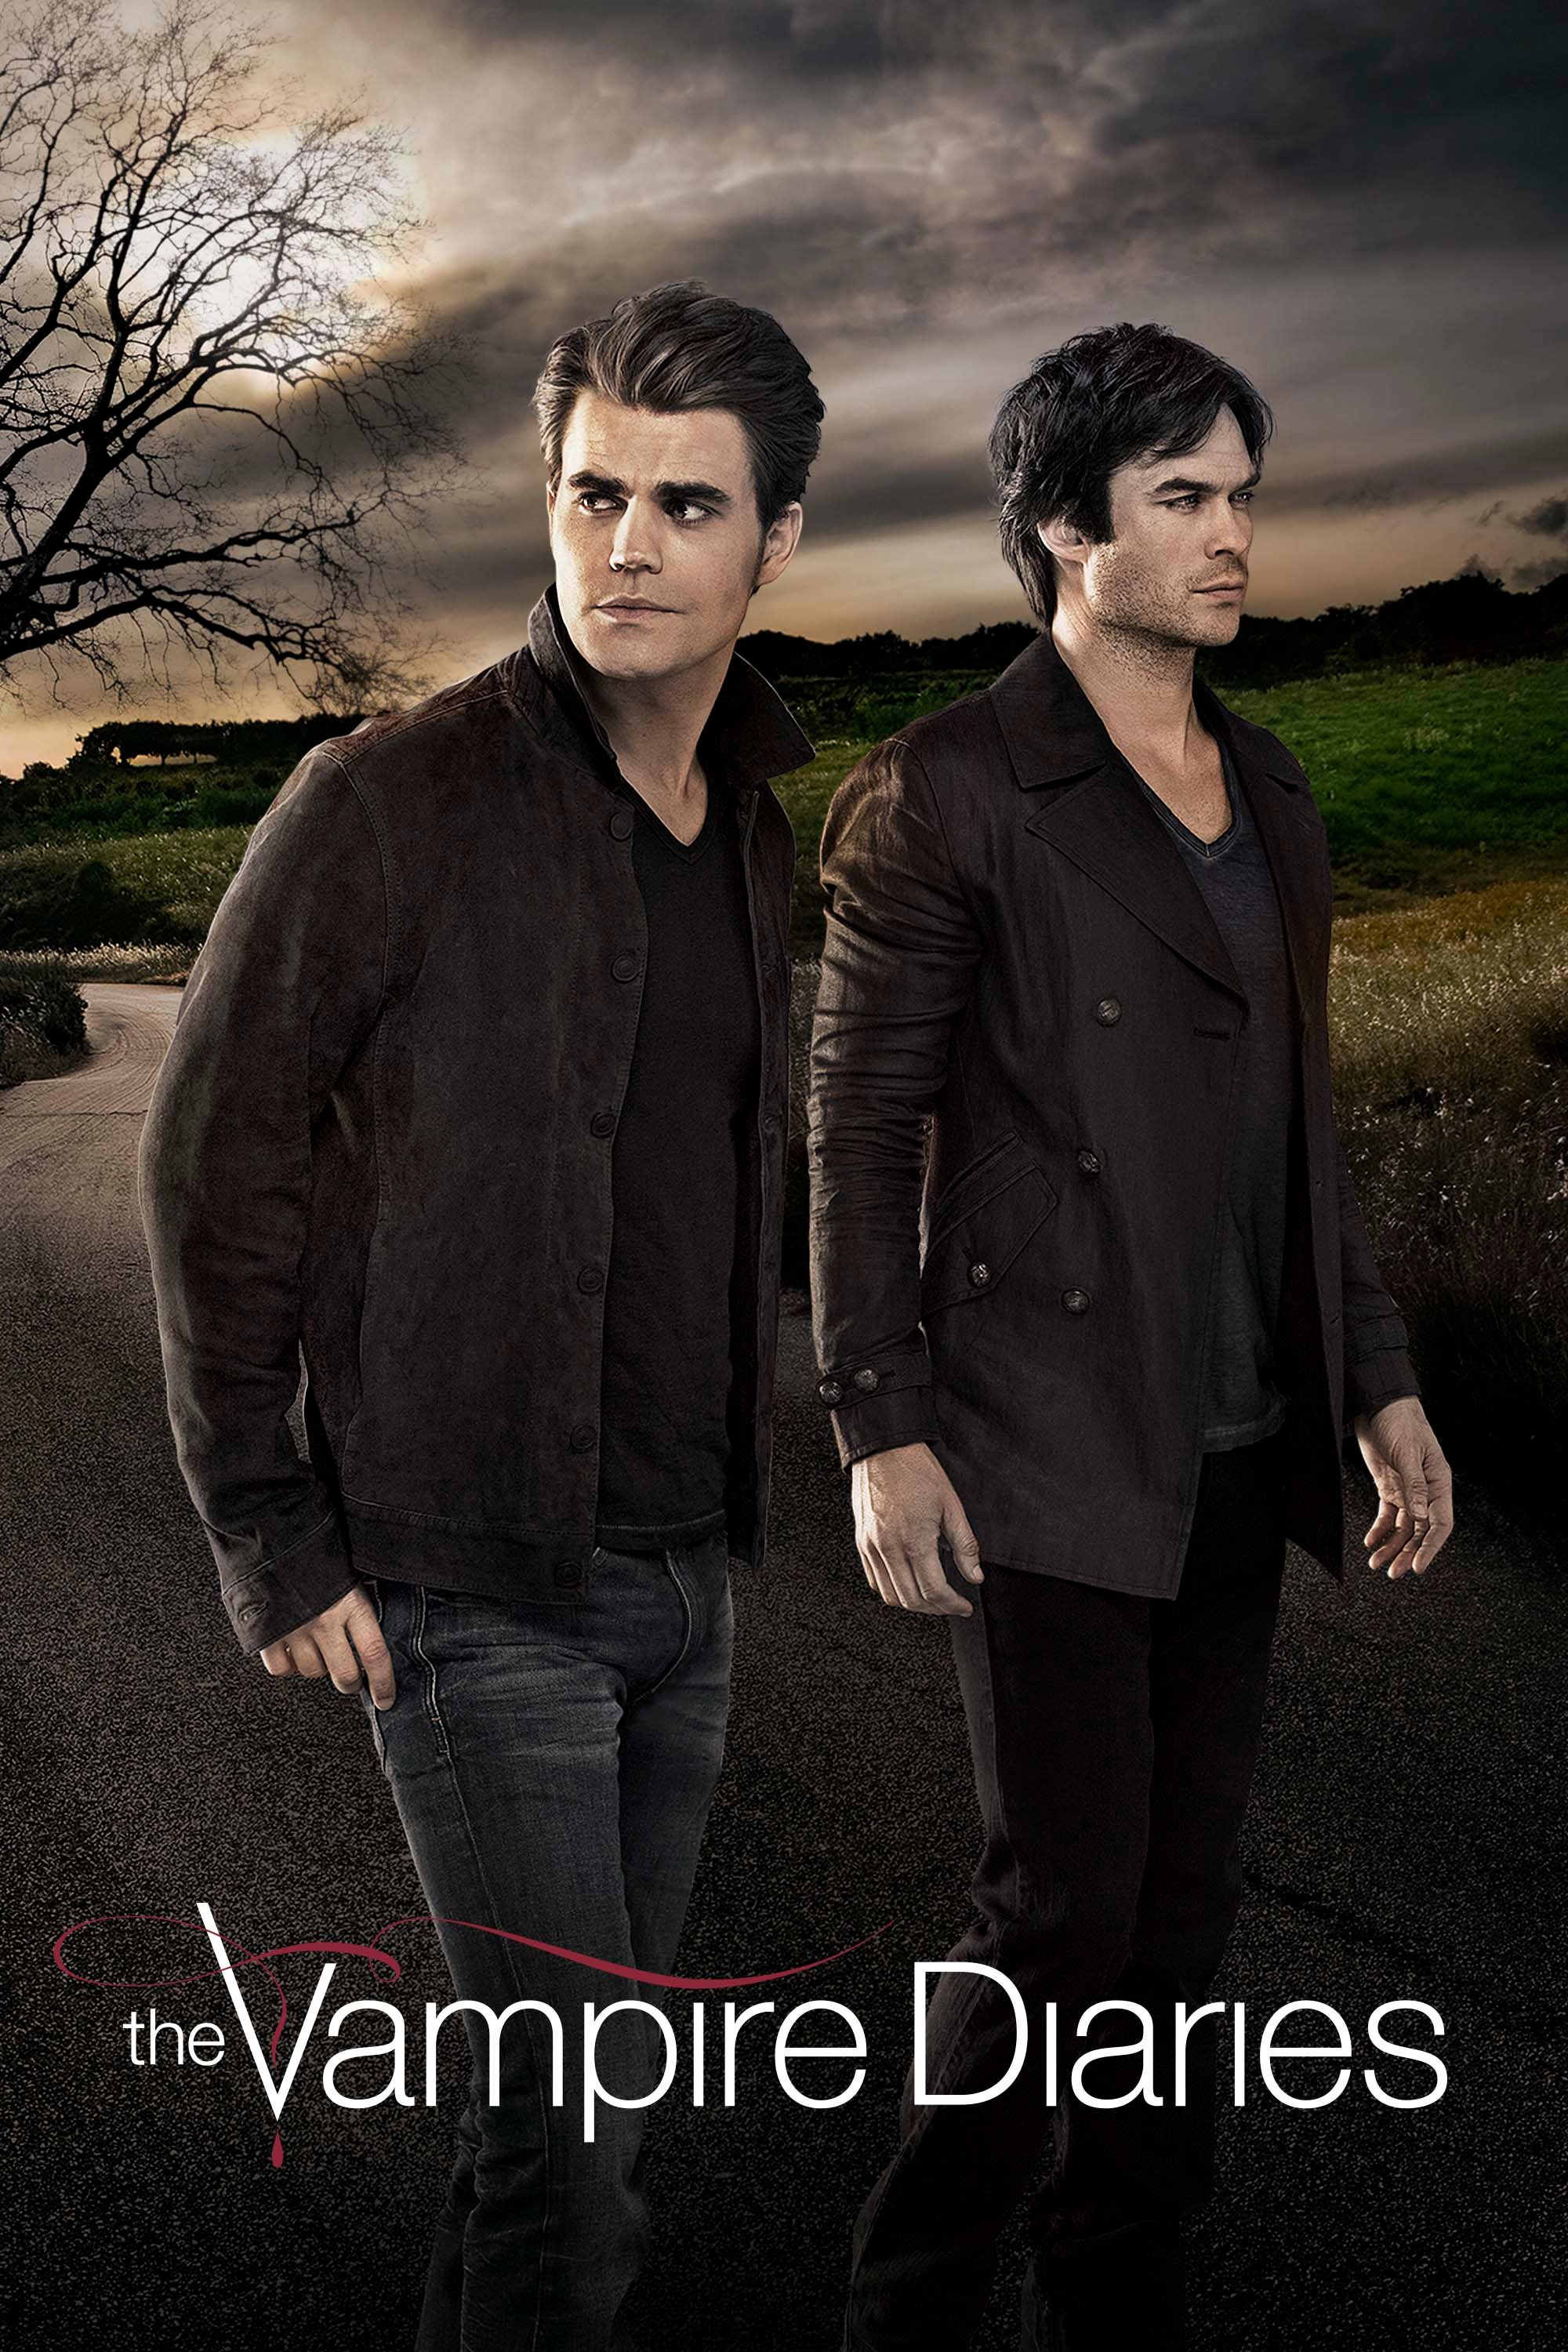 The Vampire Diaries, 2009 